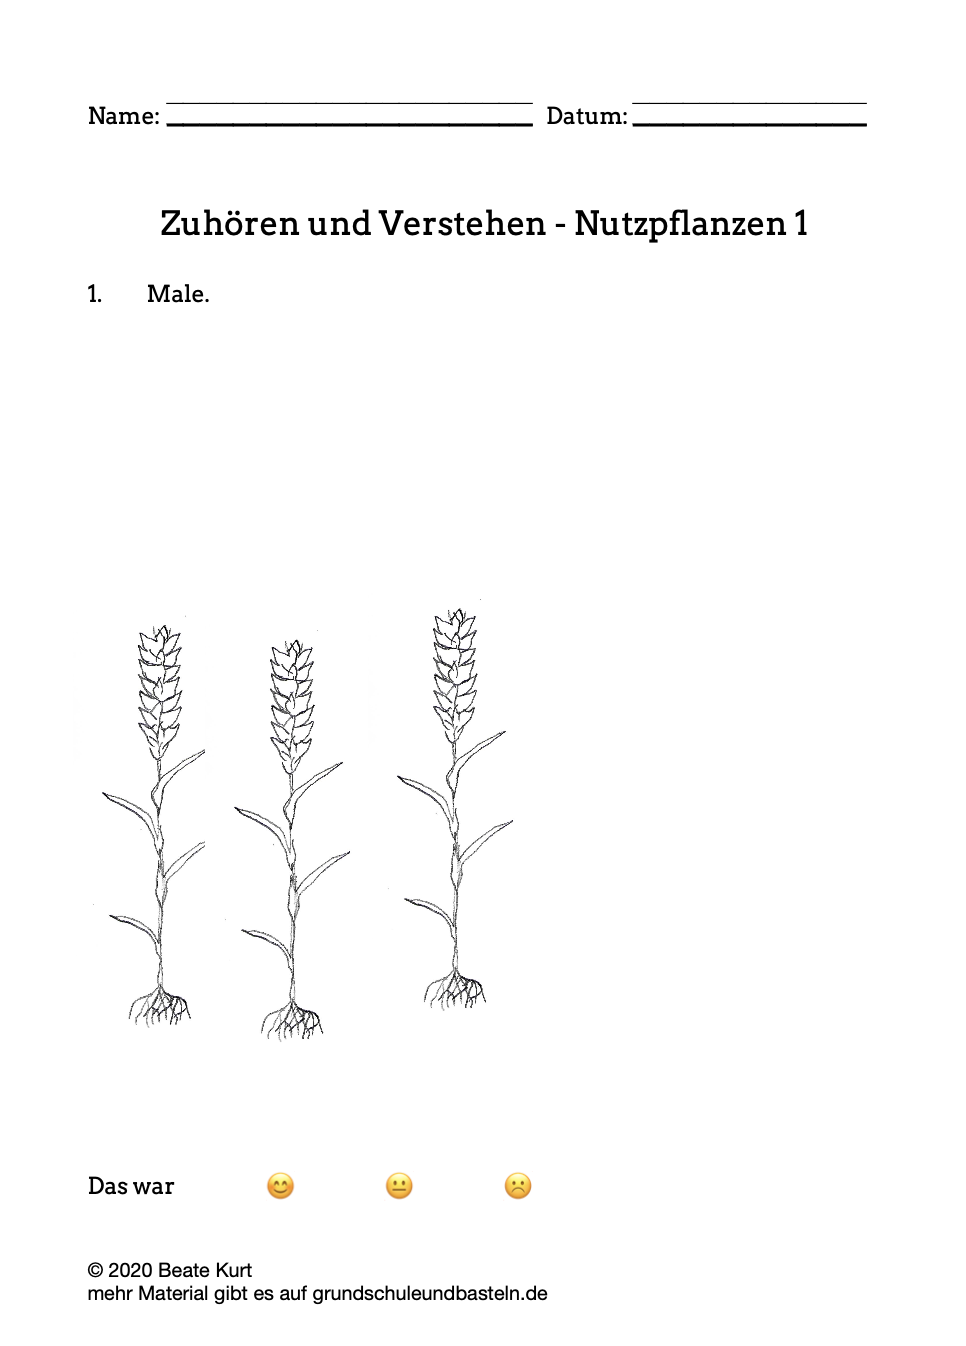  Arbeitsmaterial Deutsch Nutzpflanzen 